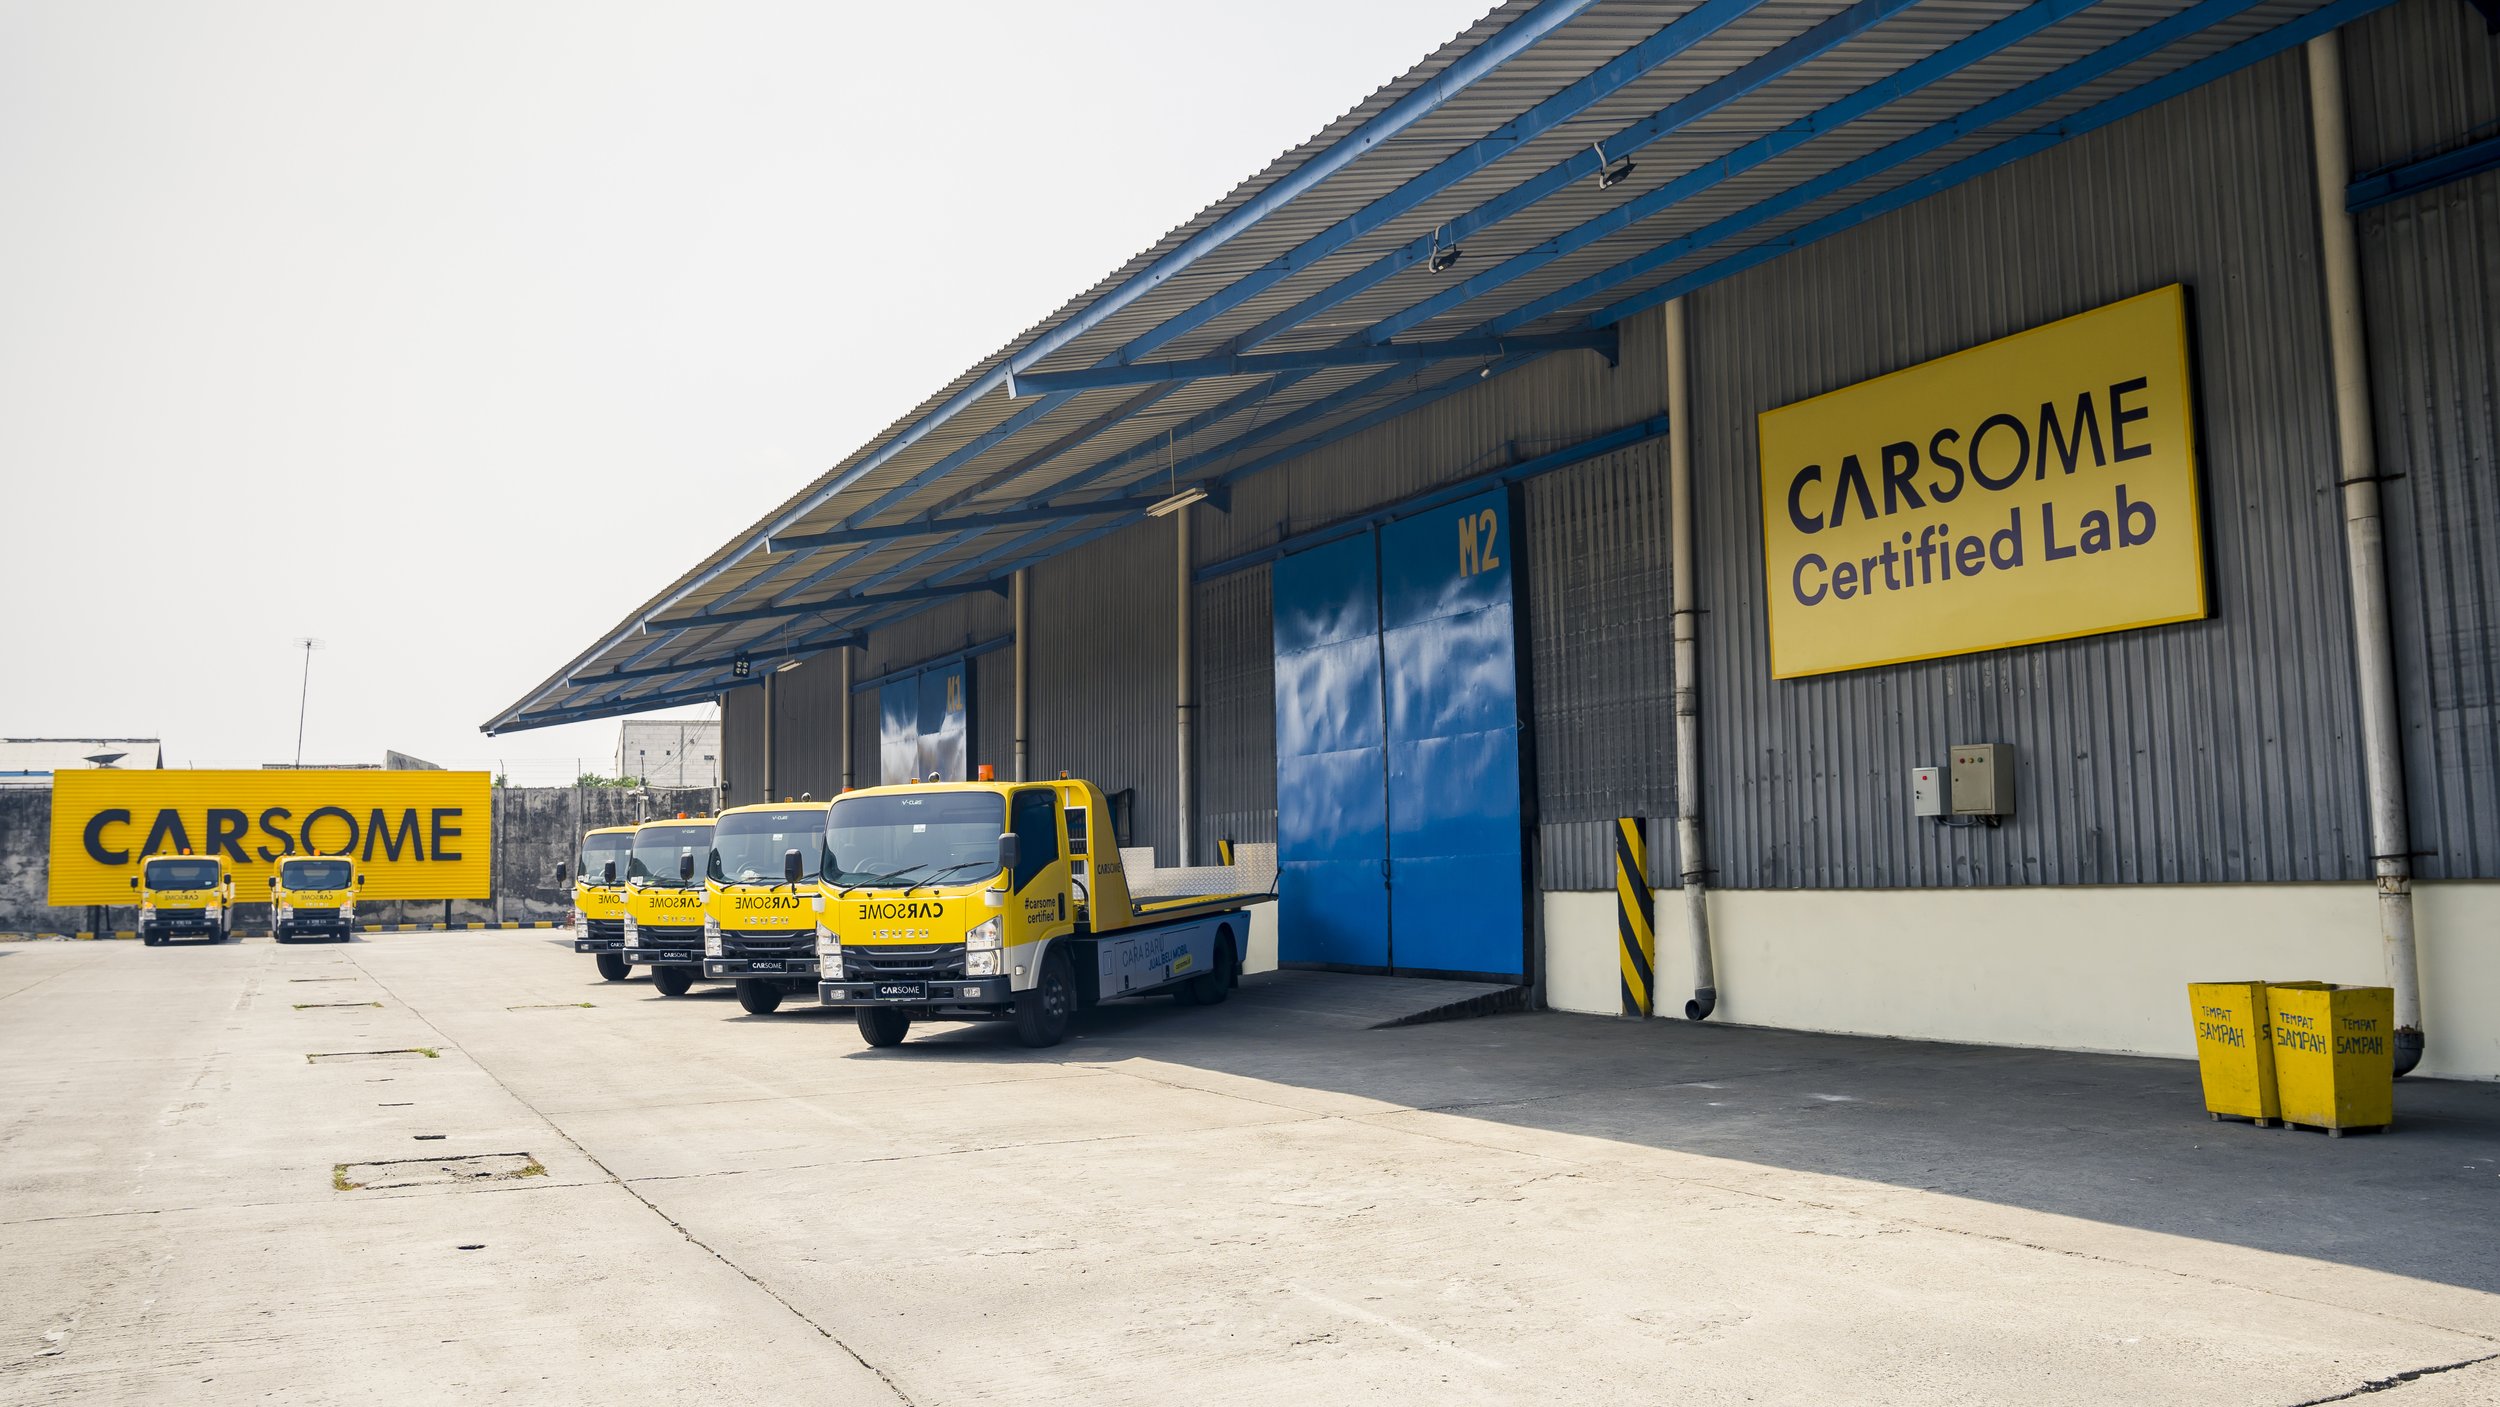  Pada Kamis, 8 September 2022, CARSOME meluncurkan CARSOME Certified Lab yang merupakan fasilitas rekondisi mobil terbesar di Asia Tenggara, dengan luas lebih dari 40.000 m2 dan kapabilitas dan kapasitas maksimum untuk memperbaiki 